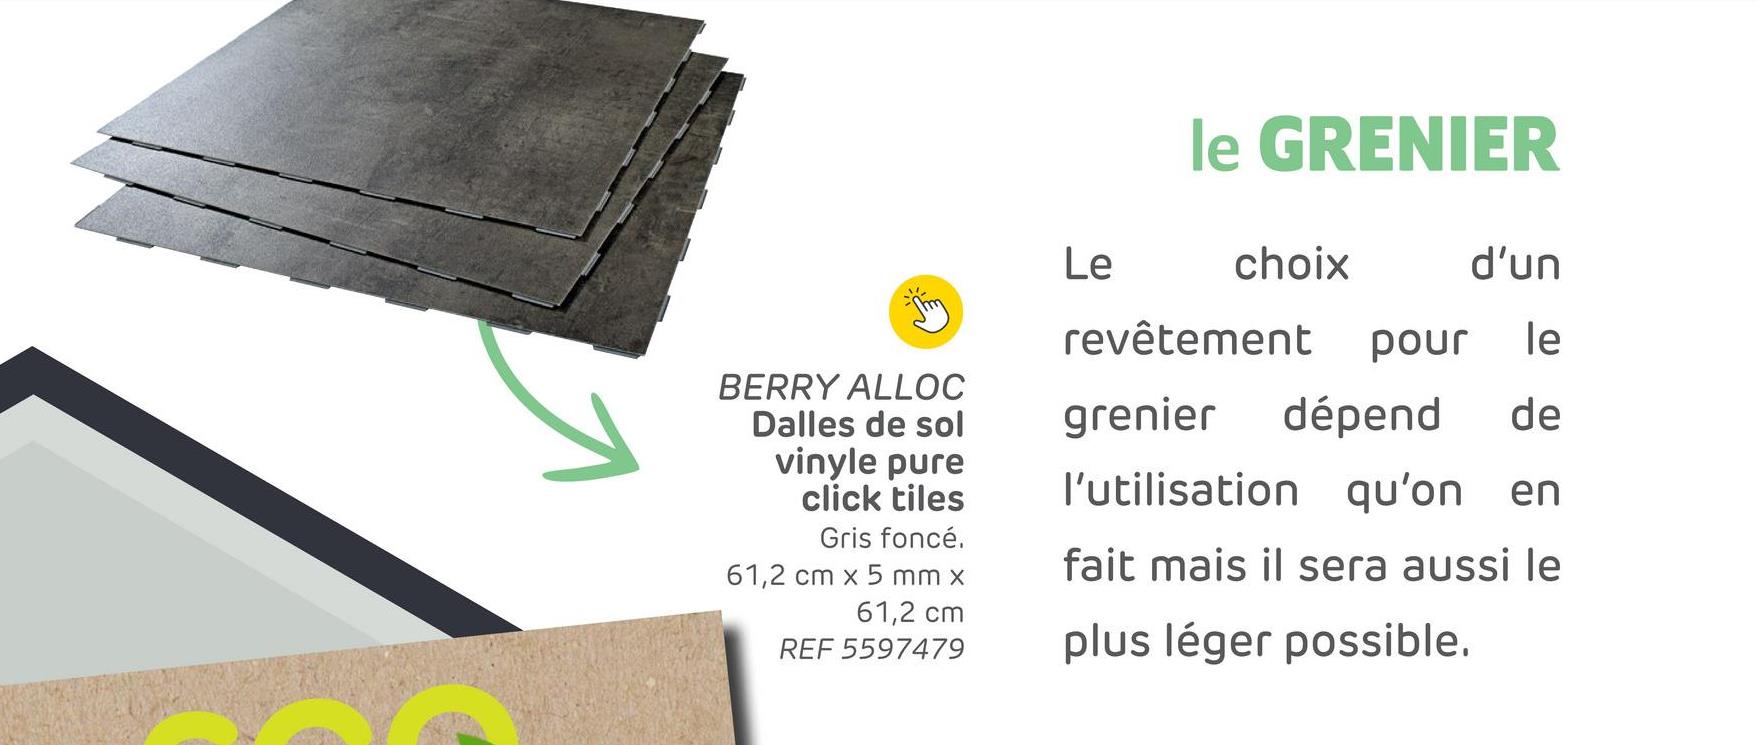 BERRY ALLOC
Dalles de sol
vinyle pure
click tiles
Gris foncé.
61,2 cm x 5 mm x
61,2 cm
REF 5597479
le GRENIER
Le
choix
d'un
revêtement pour le
grenier dépend de
l'utilisation qu'on en
fait mais il sera aussi le
plus léger possible.